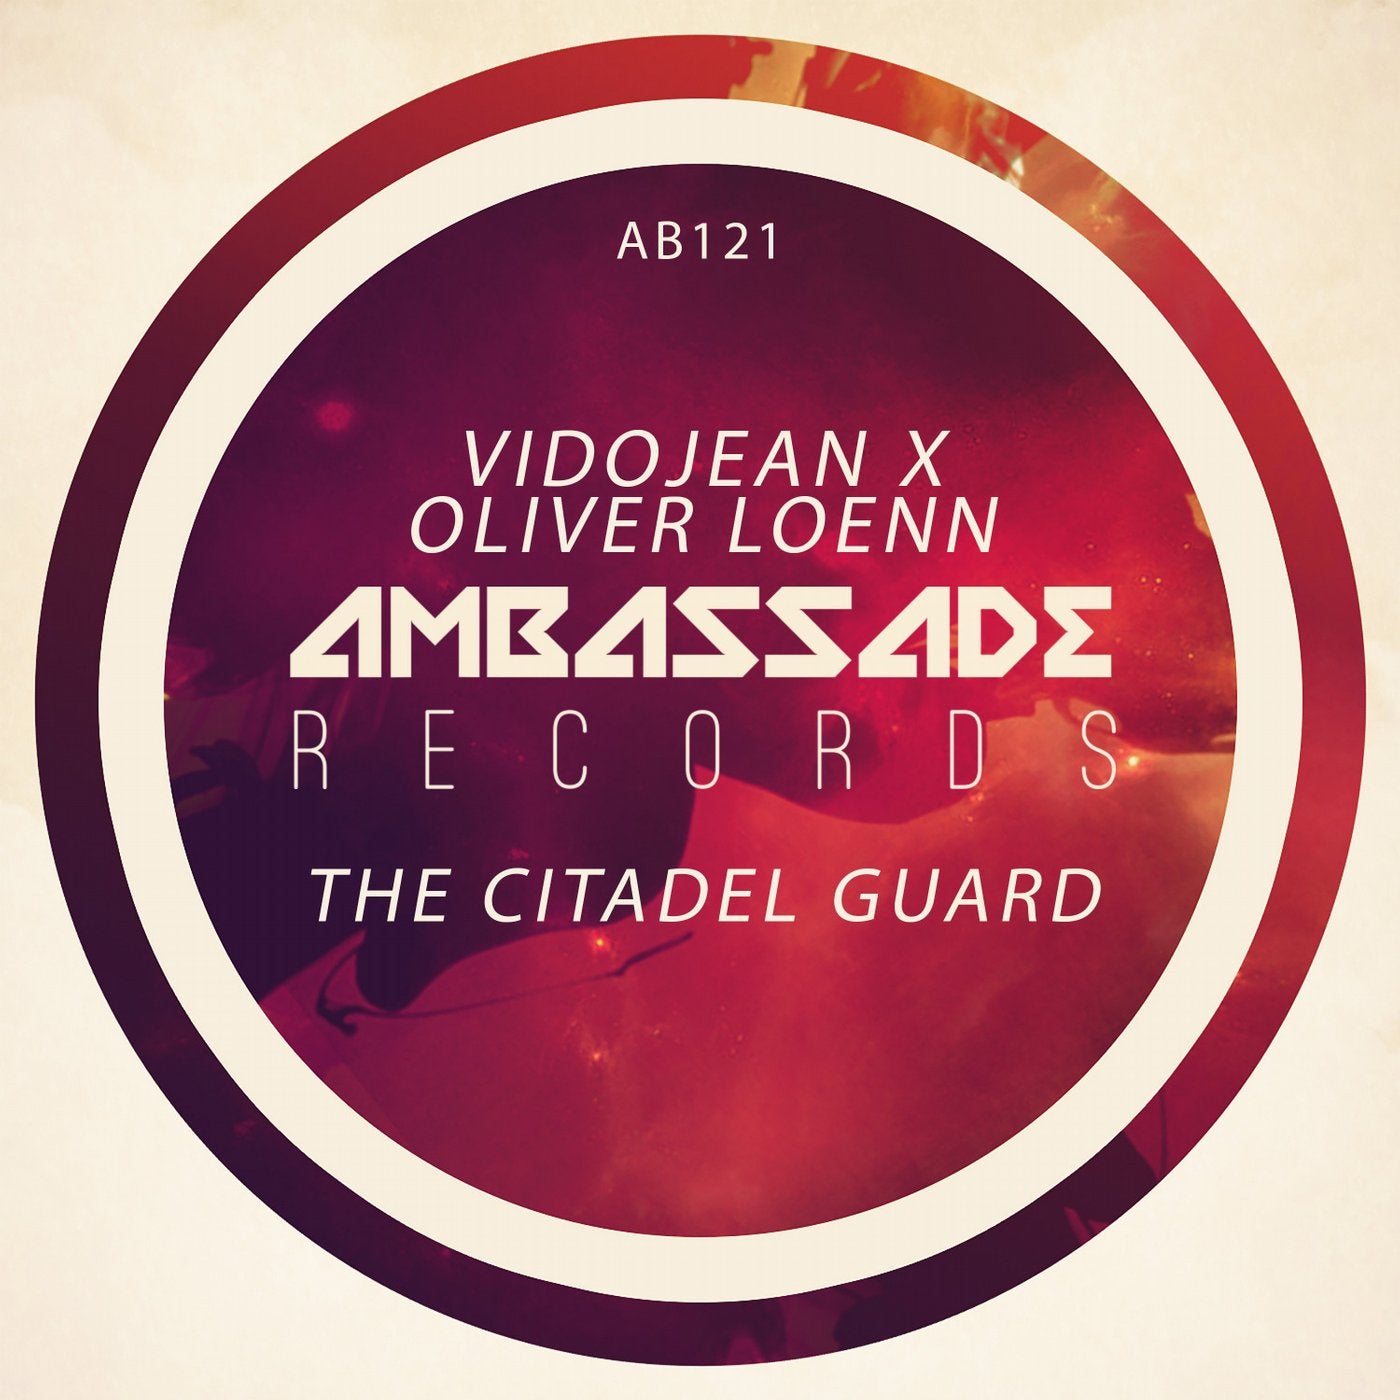 The Citadel Guard